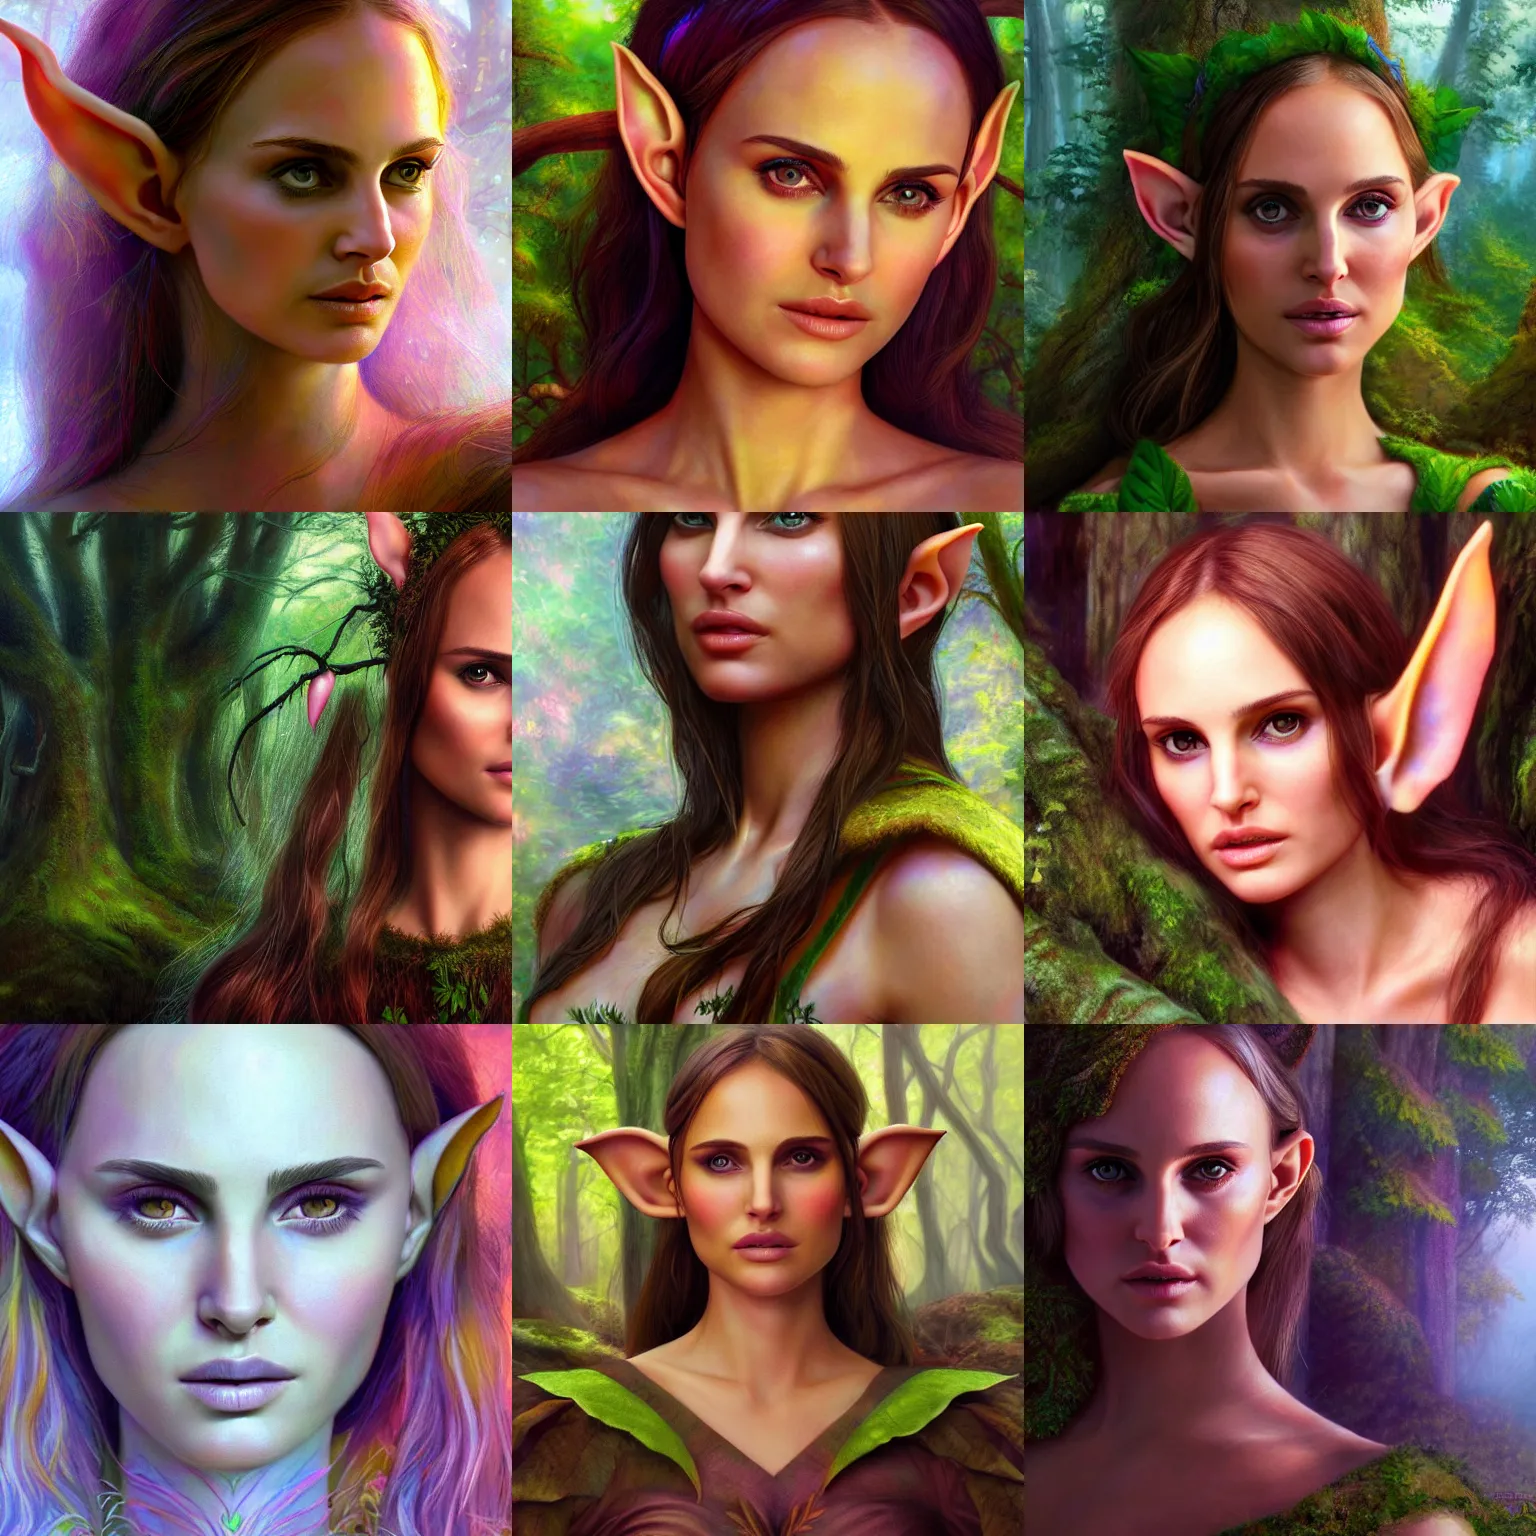 Prompt: forest elf girl (model: Natalie Portman), ethereal, colorful, portrait, fantasy, artstation, 4k, highly detailed, photorealism, by Larry Elmore